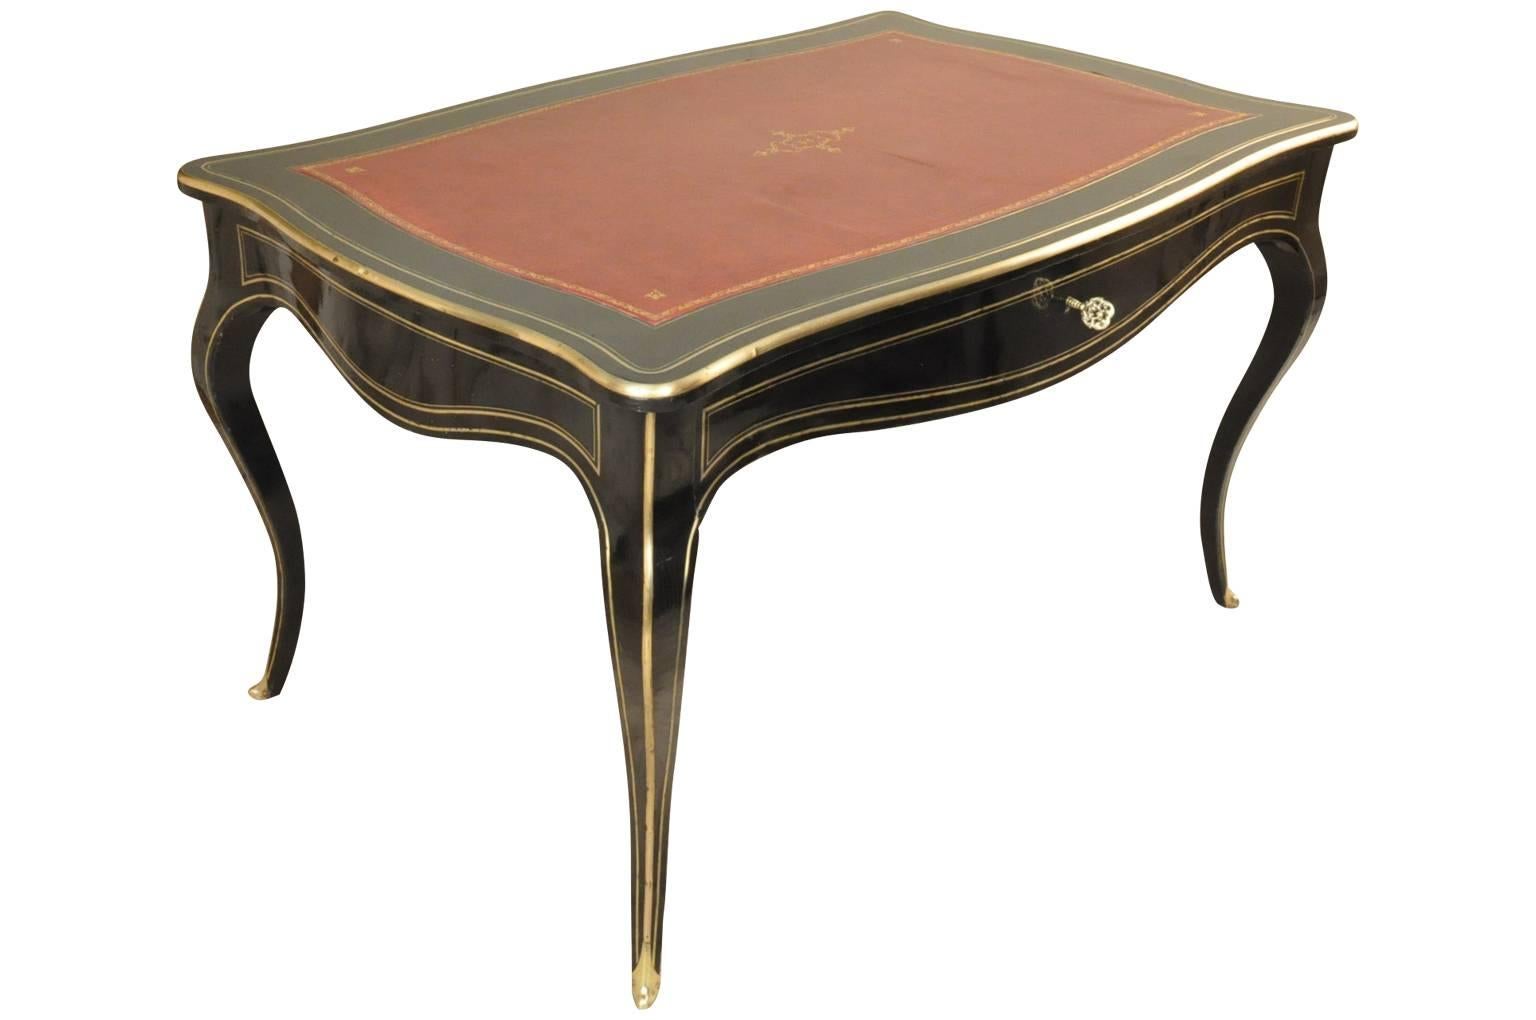 Eine erstaunliche und sehr feine 19. Jahrhundert Französisch Napoleon III bureau plat - Schreibtisch. Meisterhaft konstruiert aus ebonisiertem oder lackiertem Holz, mit Bronzebeschlägen. Der Deckel ist mit einer Schreibfläche aus vergoldetem Leder